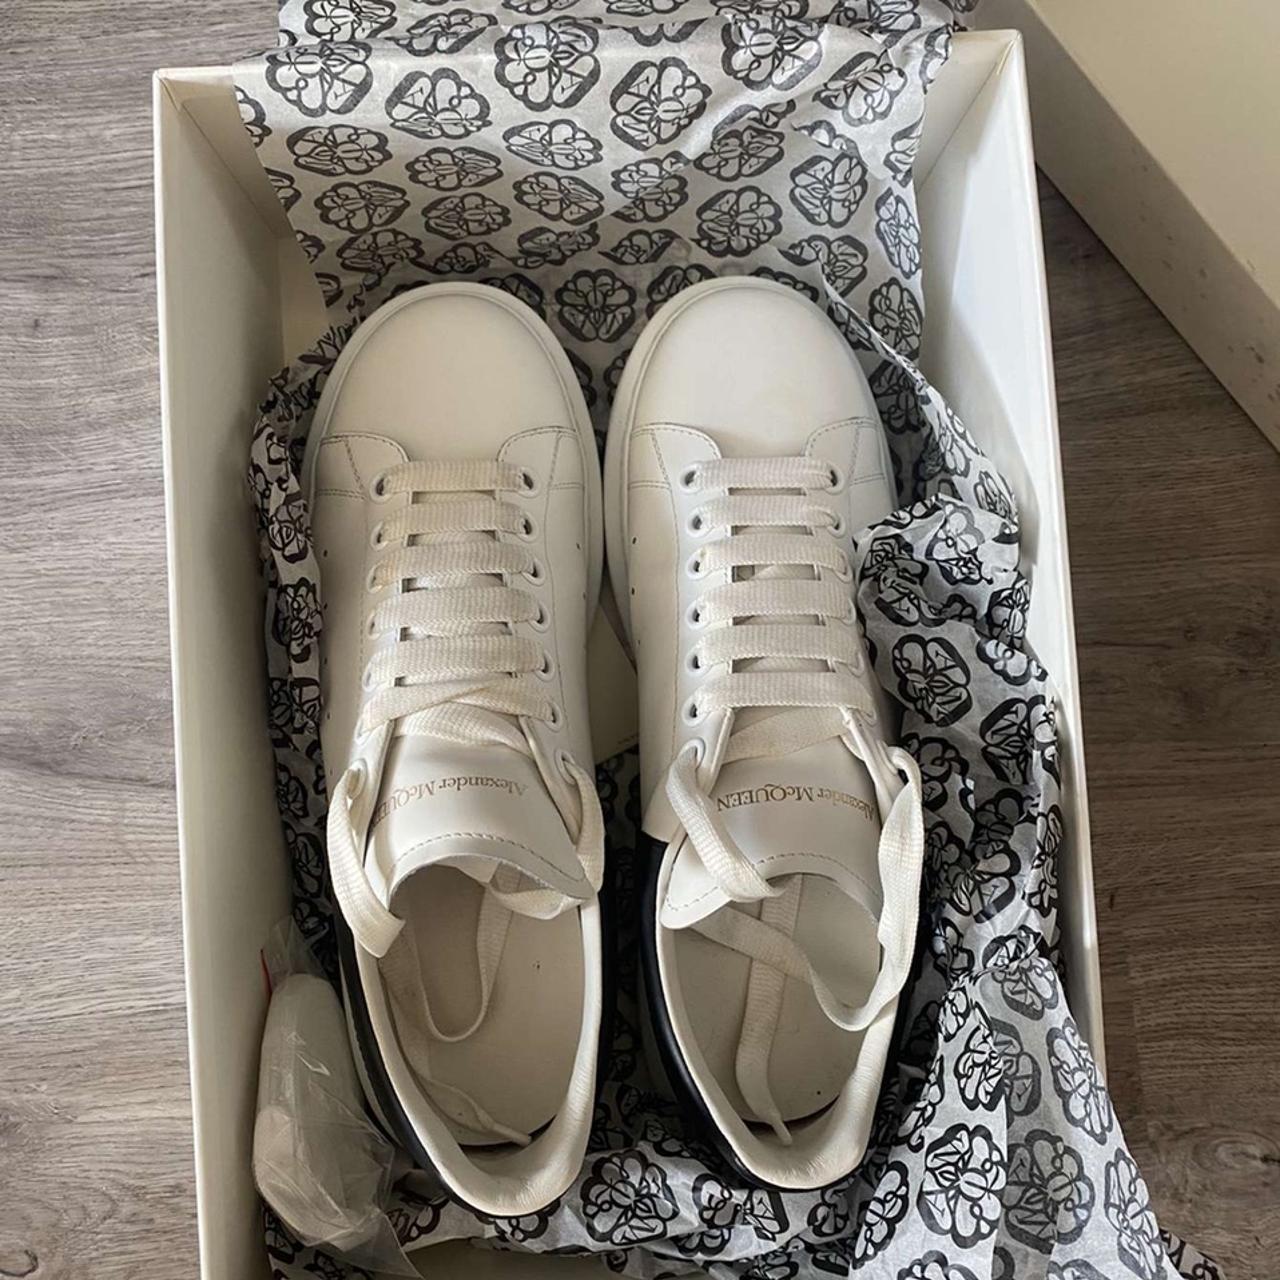 Men’s Alexander Mcqueen sneakers white/black size 8... - Depop